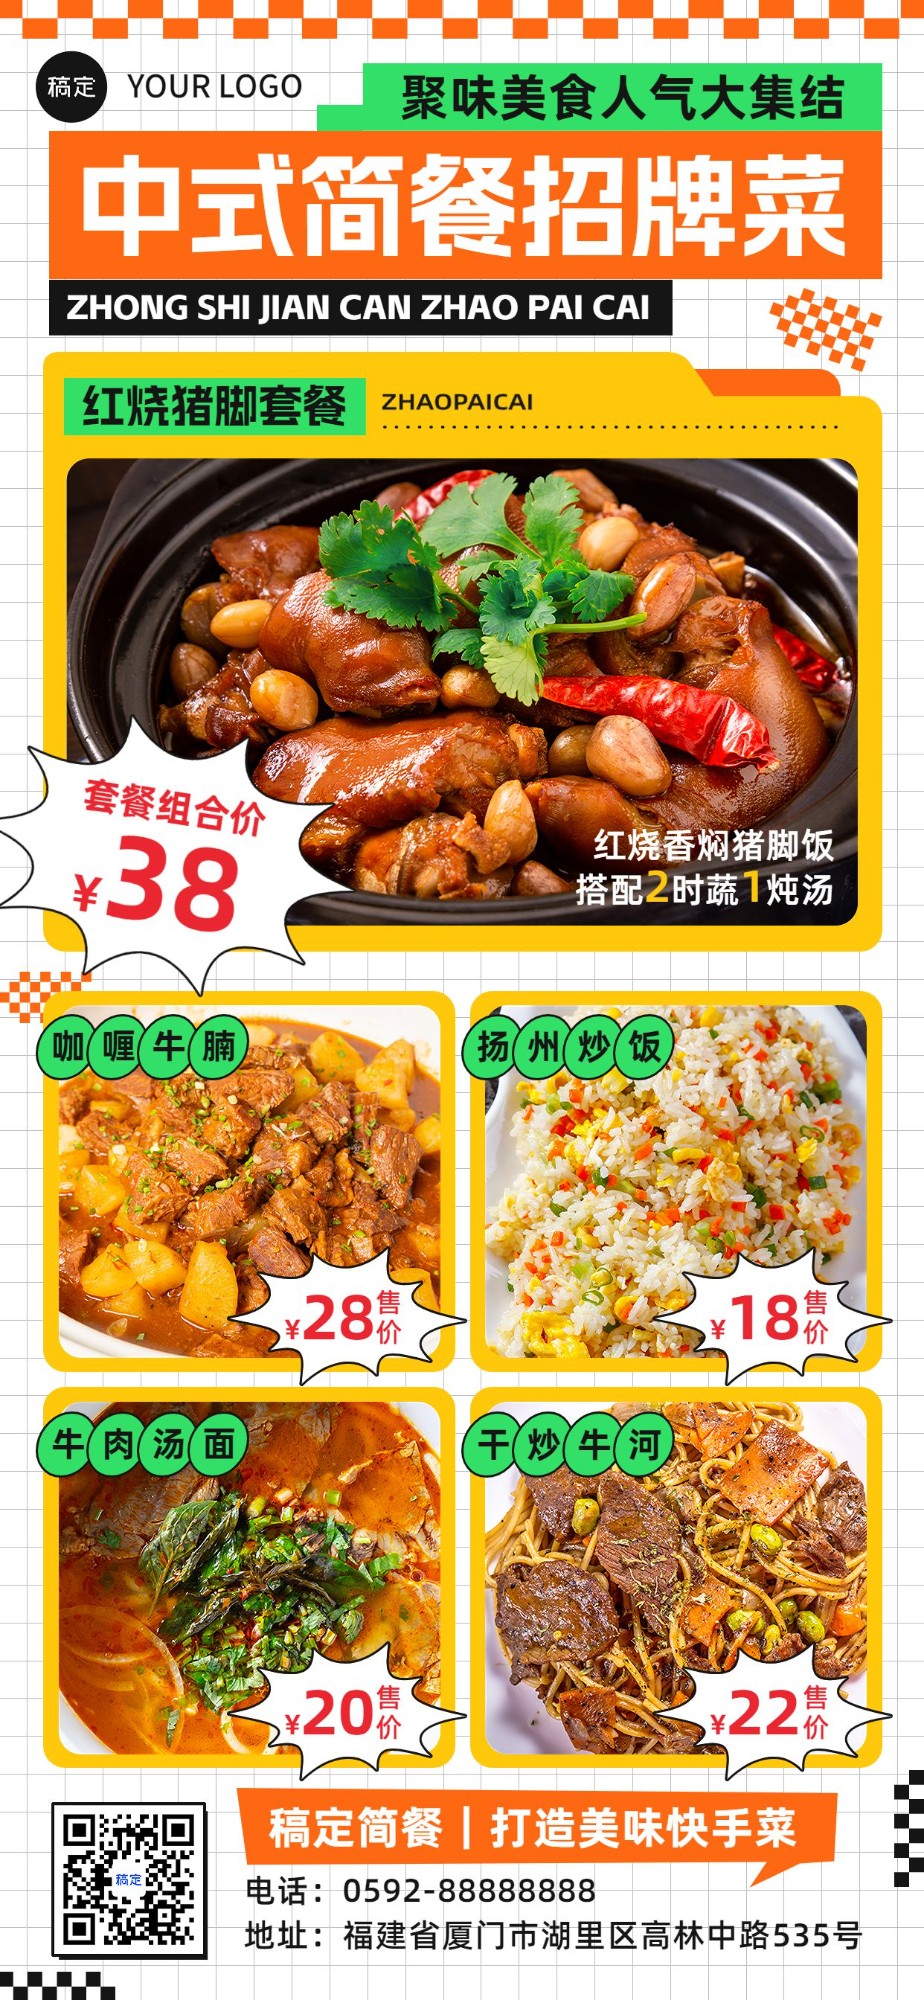 餐饮美食中式正餐热门产品菜单潮流图框全屏竖版海报预览效果